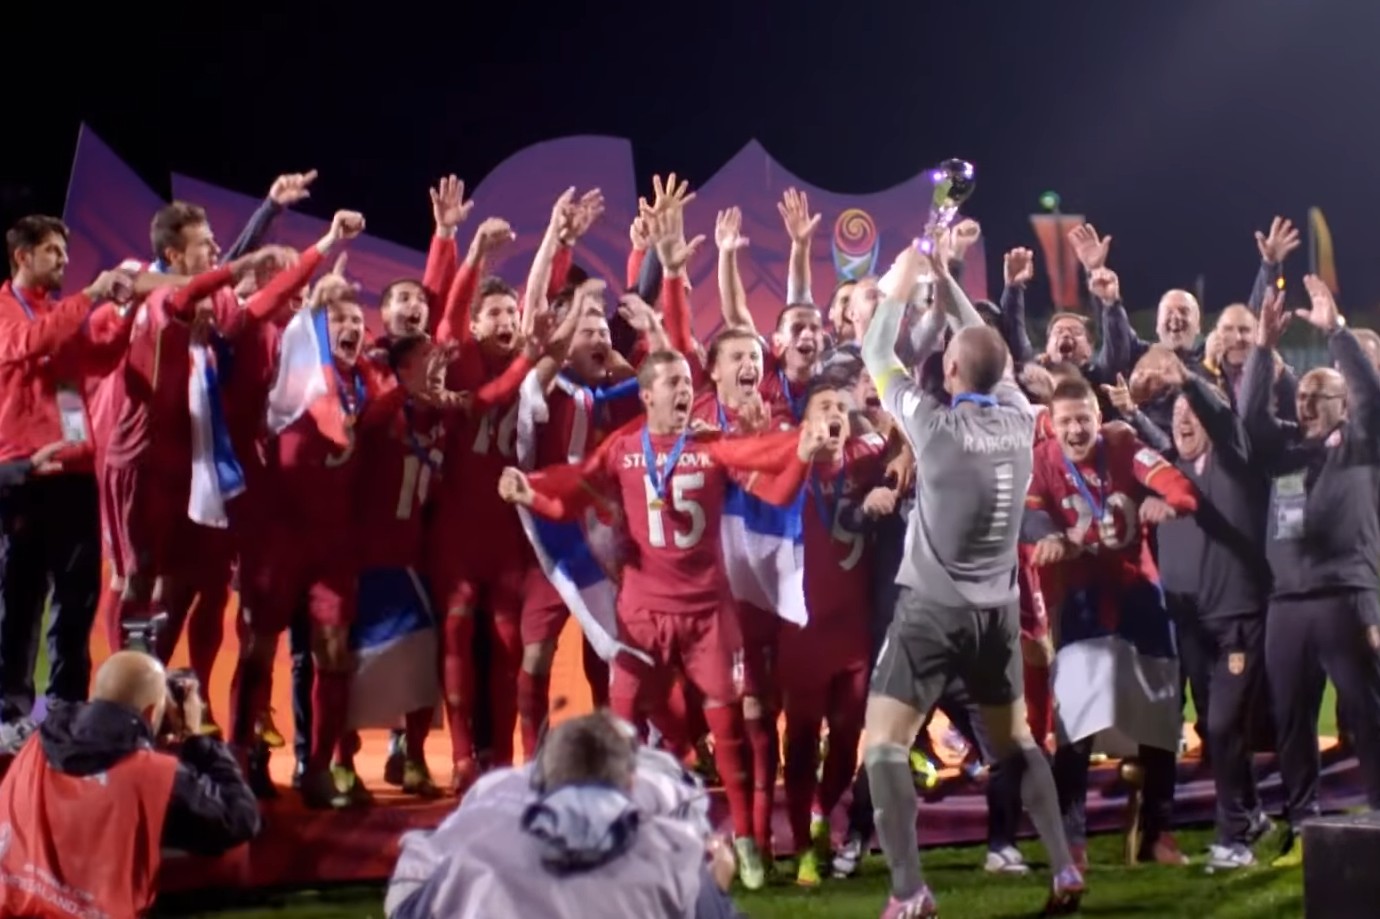 Omladinski reprezentativci Srbije (U-20) tokom proslave titule svetskog šampiona u fudbalu, Ouklend (Novi Zeland), 20. jun 2015. (Foto: Snimak ekrana/Jutjub/FIFATV)